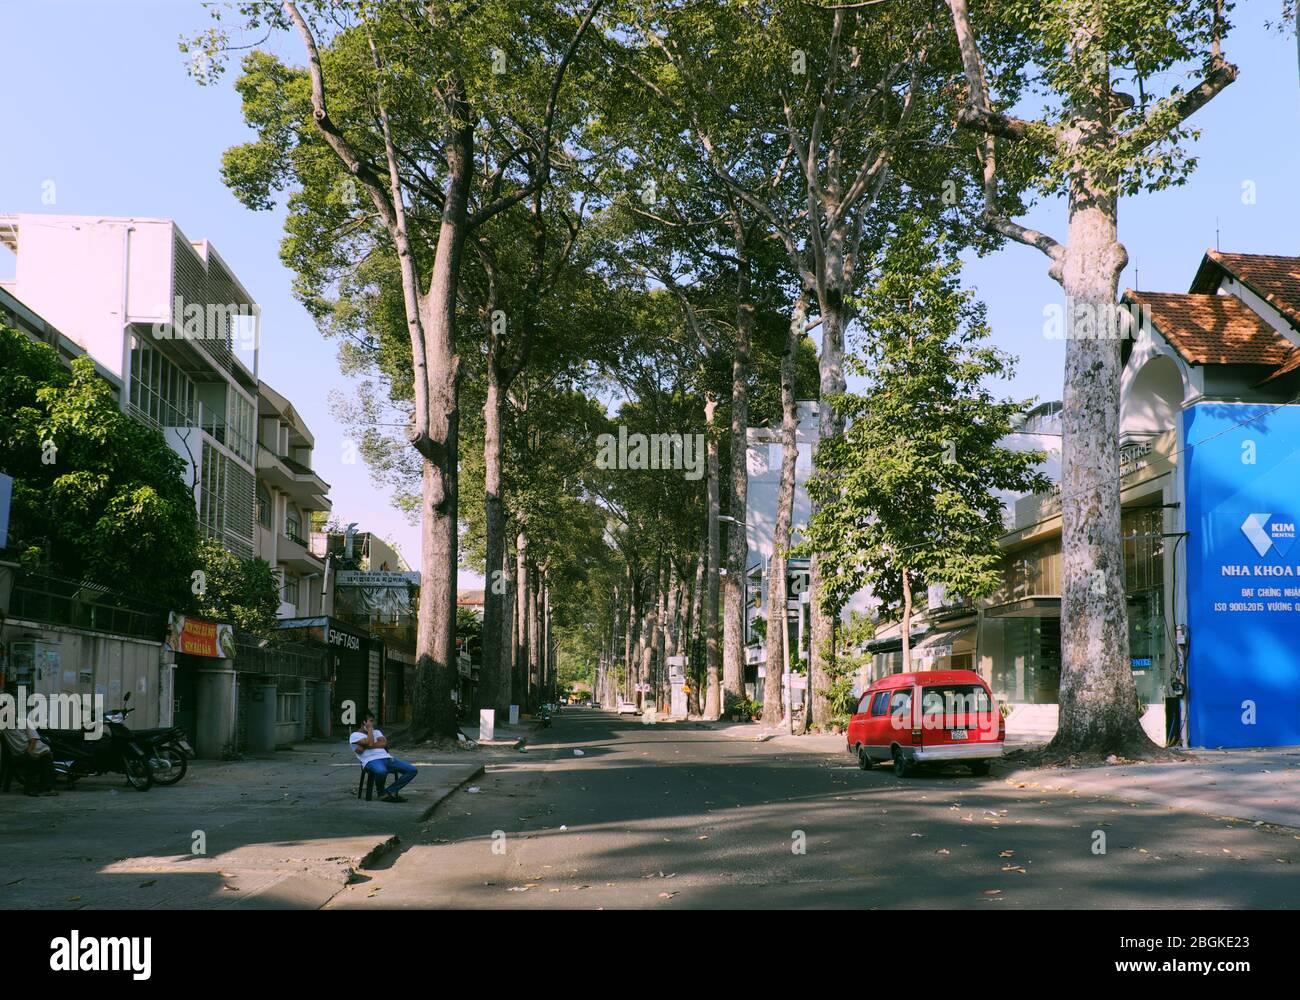 Menschenleere Straße, ruhige Szene im zentralen Bereich der Großstadt auf Anfrage Limit bewegen sich in Pandemie, nur wenige Fahrzeug bewegen am Tag, Ho Chi Minh Stadt Stockfoto